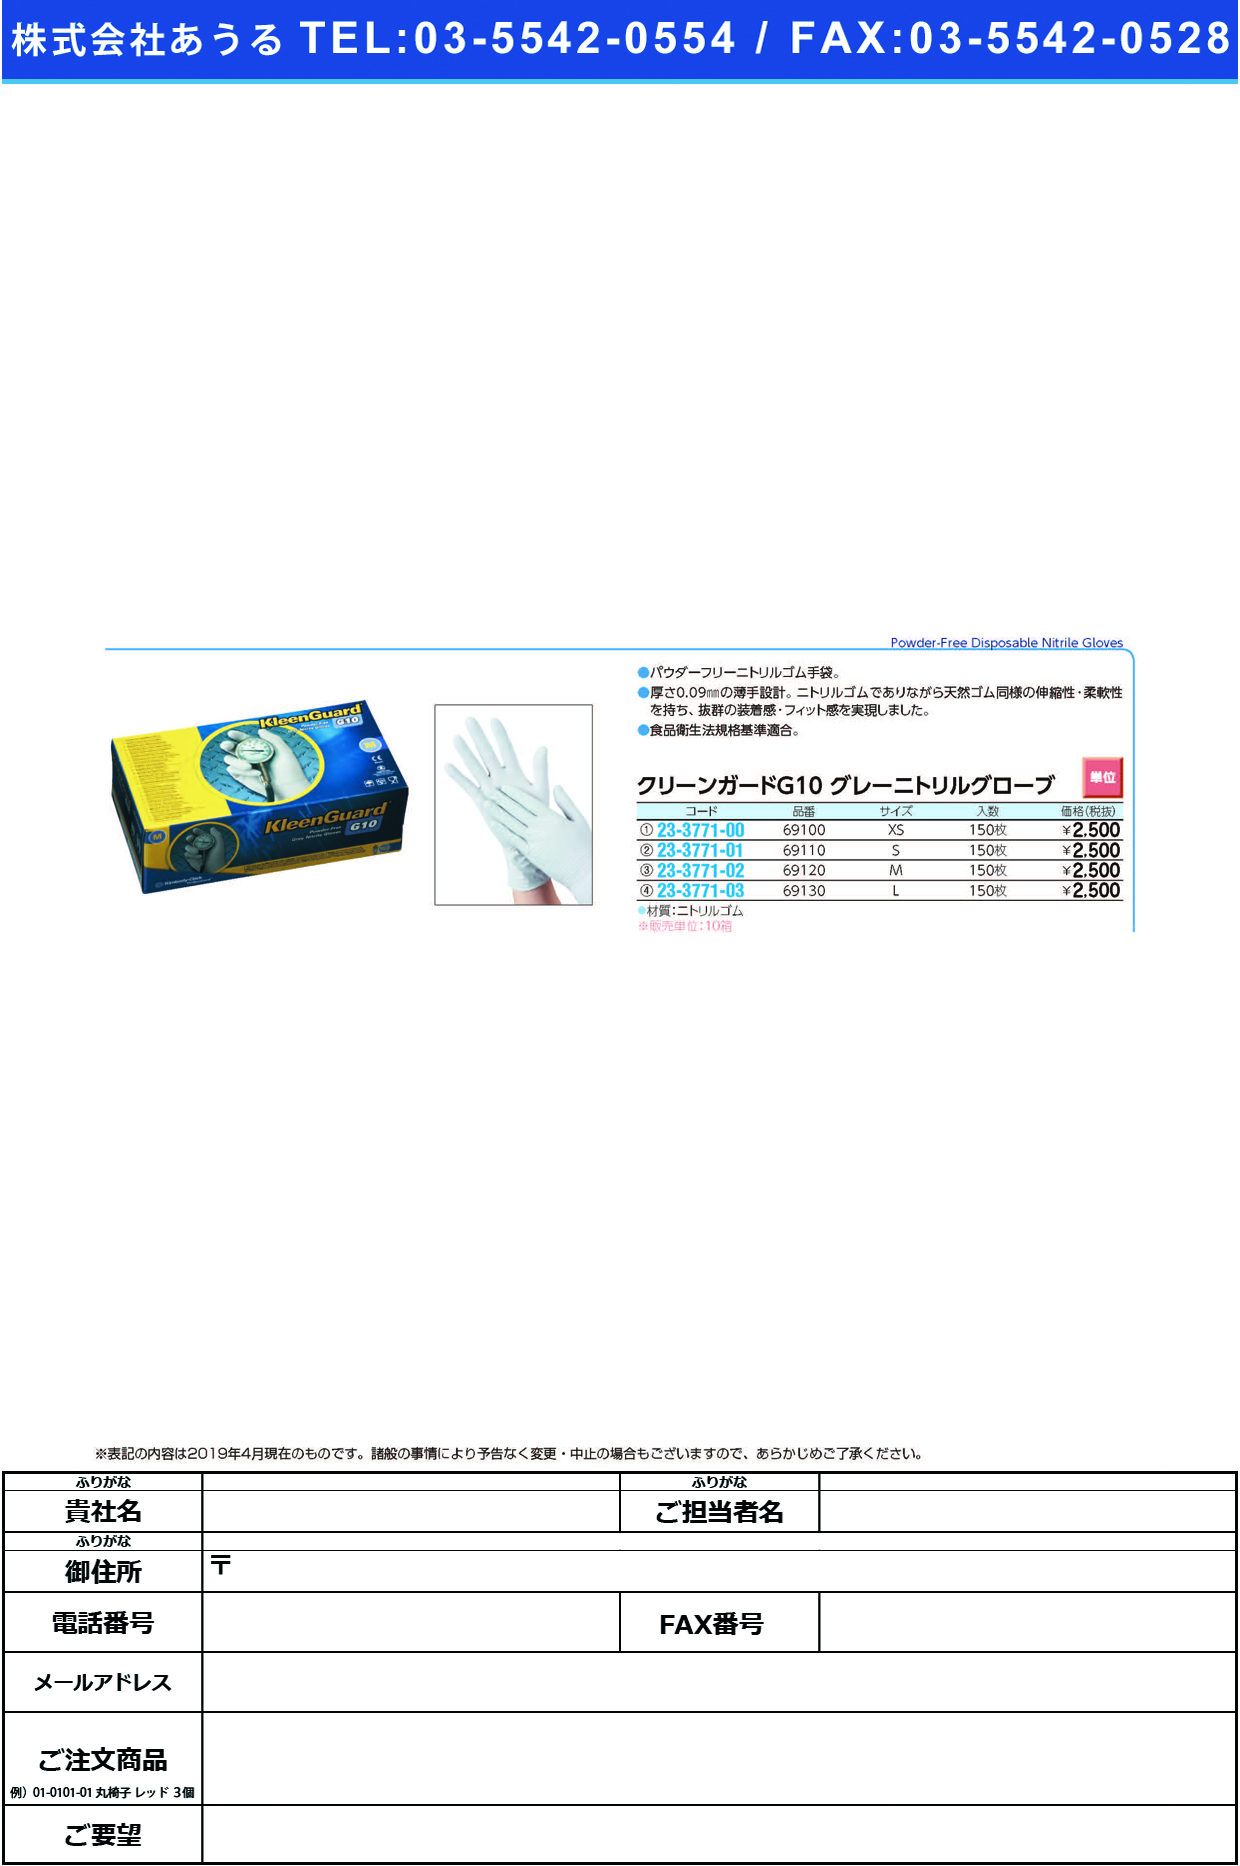 (23-3771-00)クリーンガードＧ１０ニトリルグローブ 69100(XS)150ﾏｲｲﾘ ｸﾘｰﾝｶﾞｰﾄﾞG10ｸﾞﾛｰﾌﾞ(日本製紙クレシア)【10箱単位】【2019年カタログ商品】